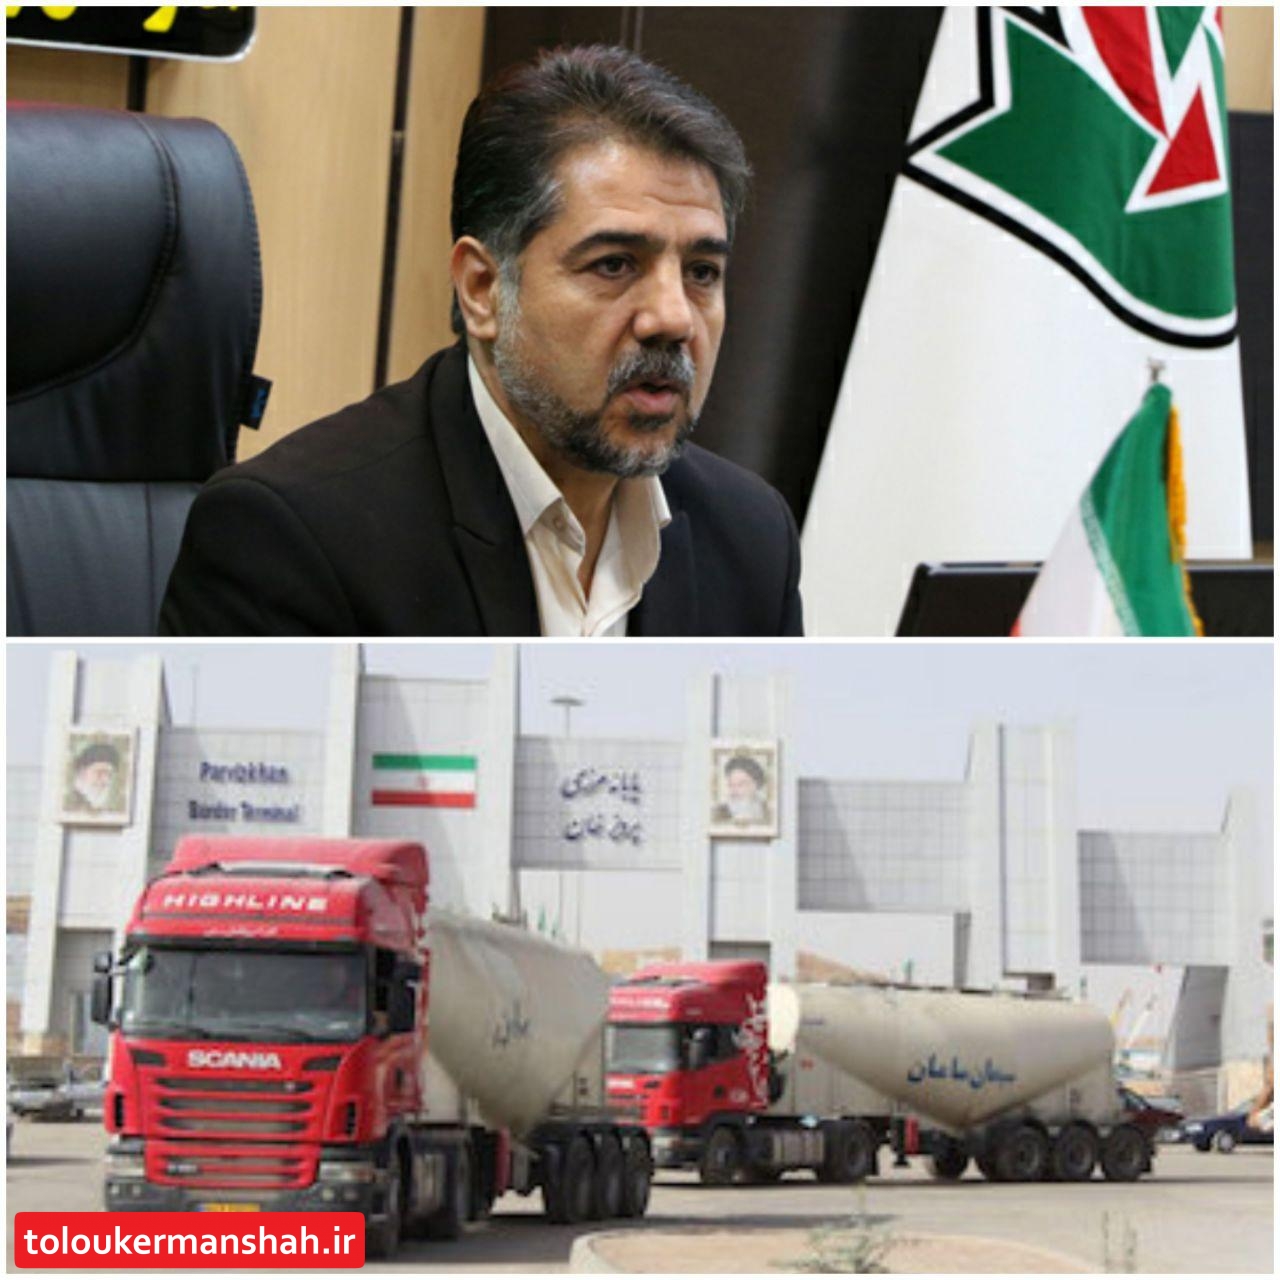 بلاتکلیفی کامیونهای حامل سوخت در مرز ایران و عراق تنها مربوط به راهداری نیست